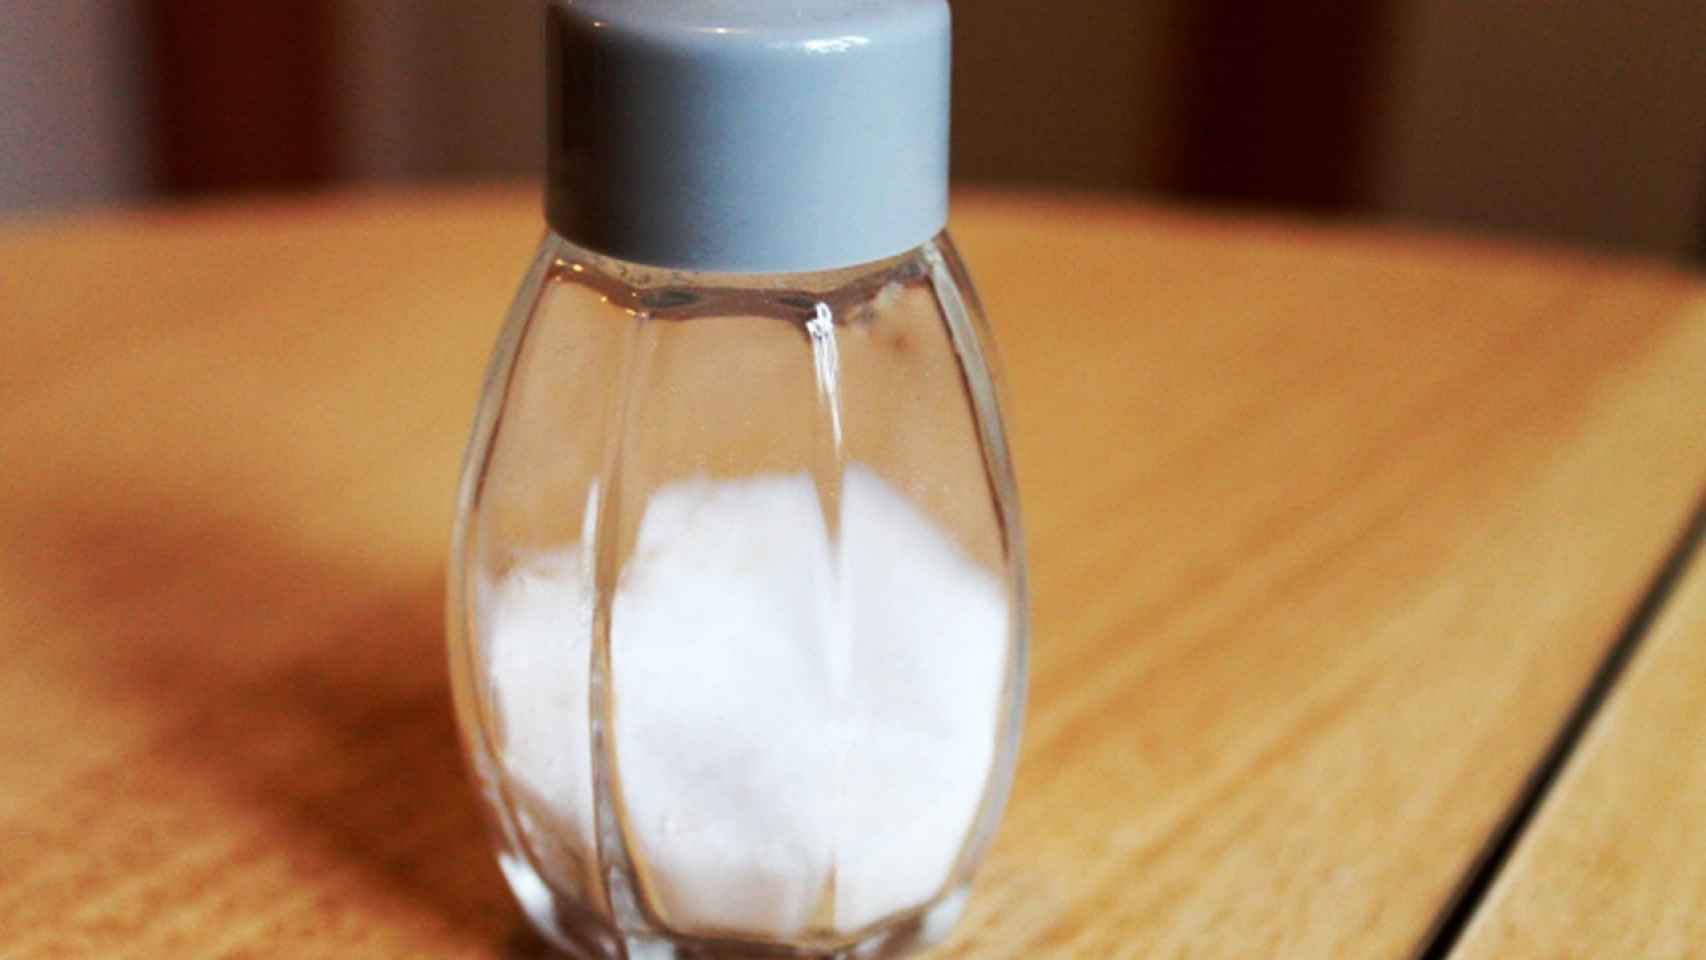 Los diferentes tipos de sal que existen y cómo usarlos en la cocina